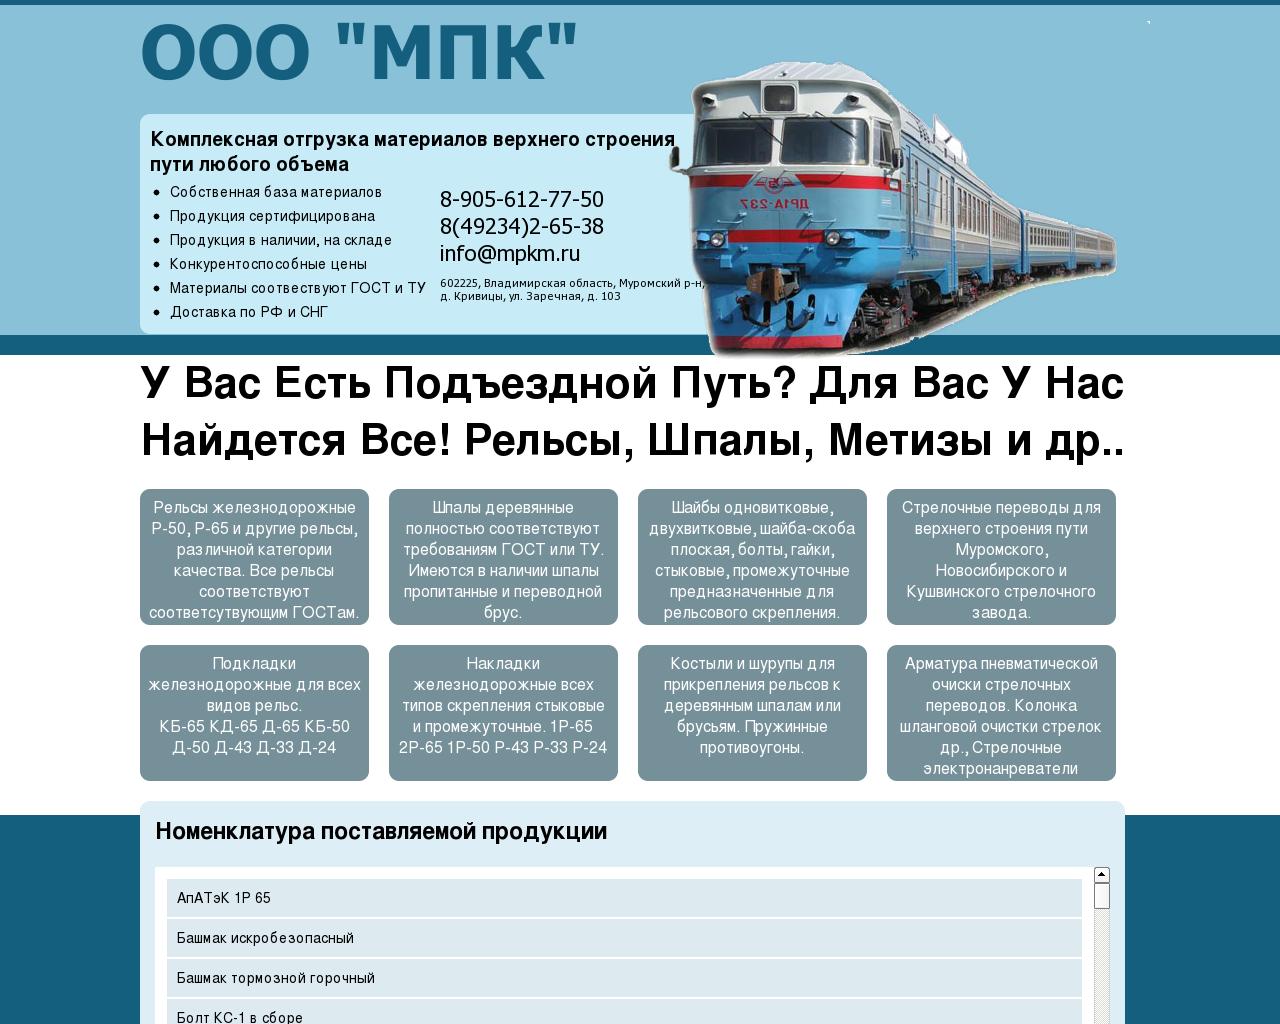 Изображение сайта mpkm.ru в разрешении 1280x1024